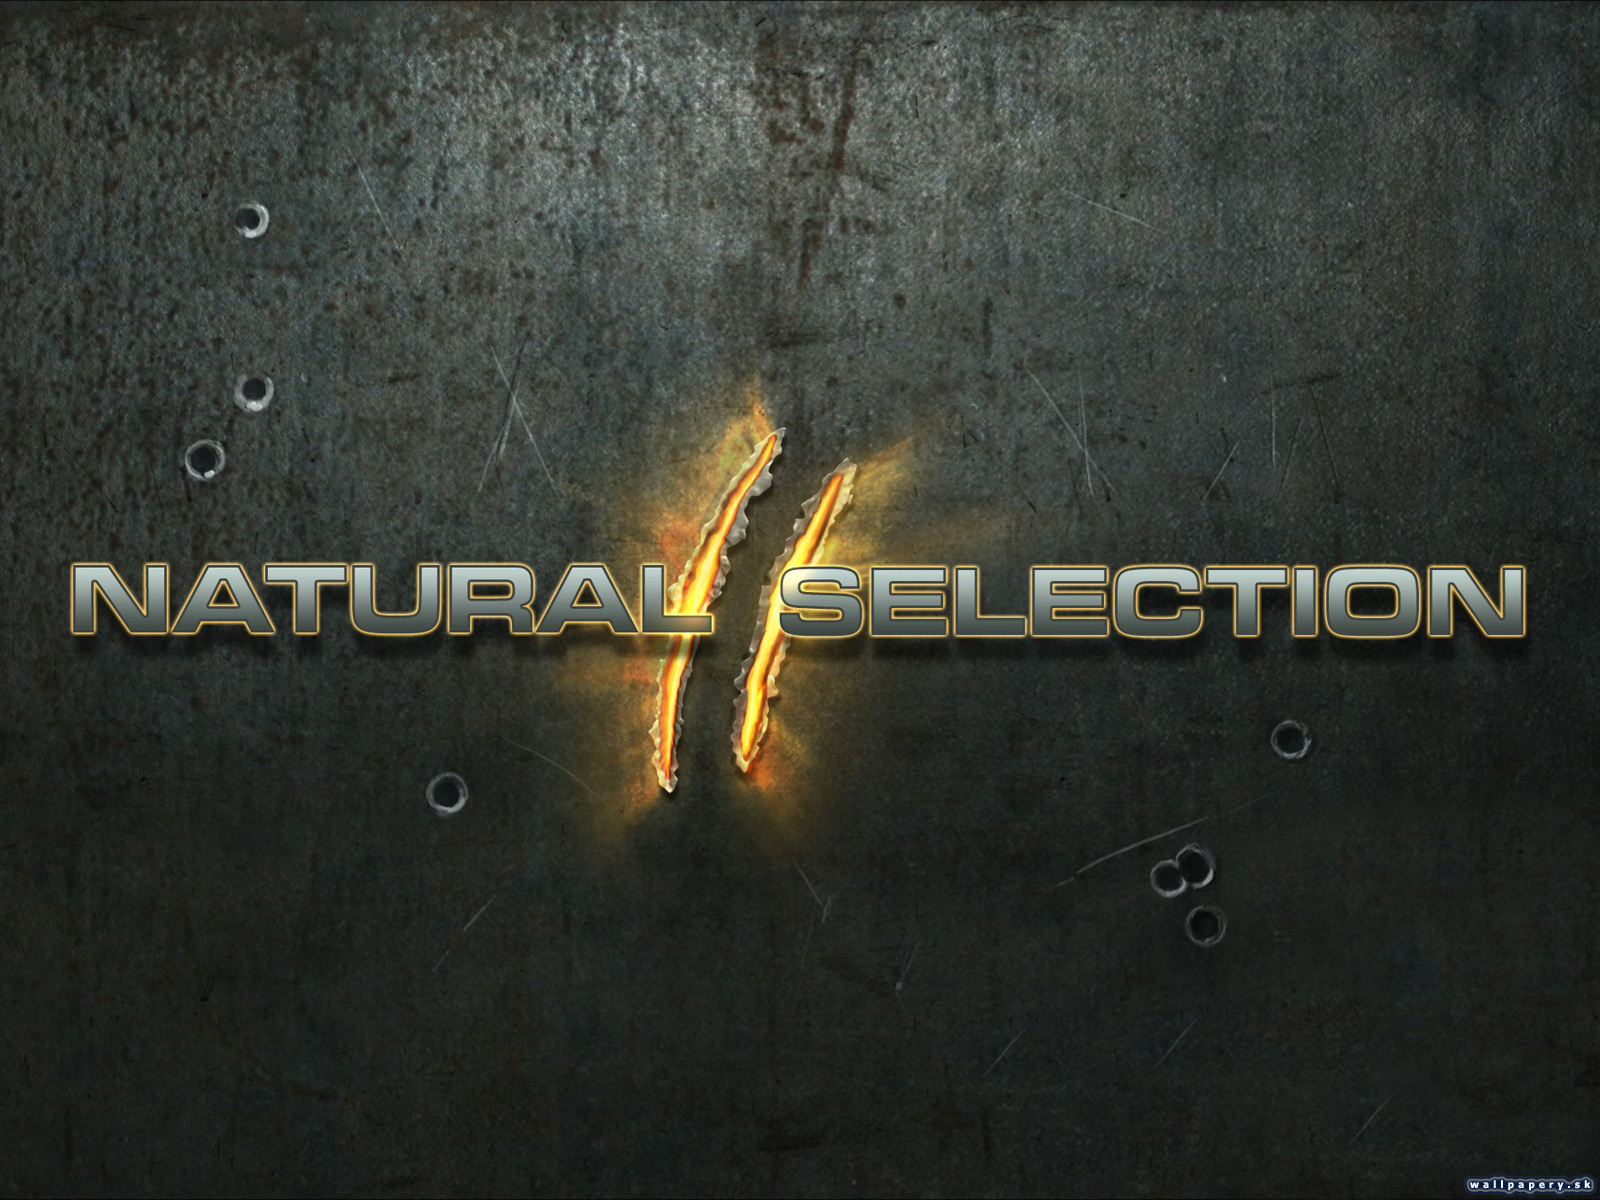 Natural Selection 2 - wallpaper 1